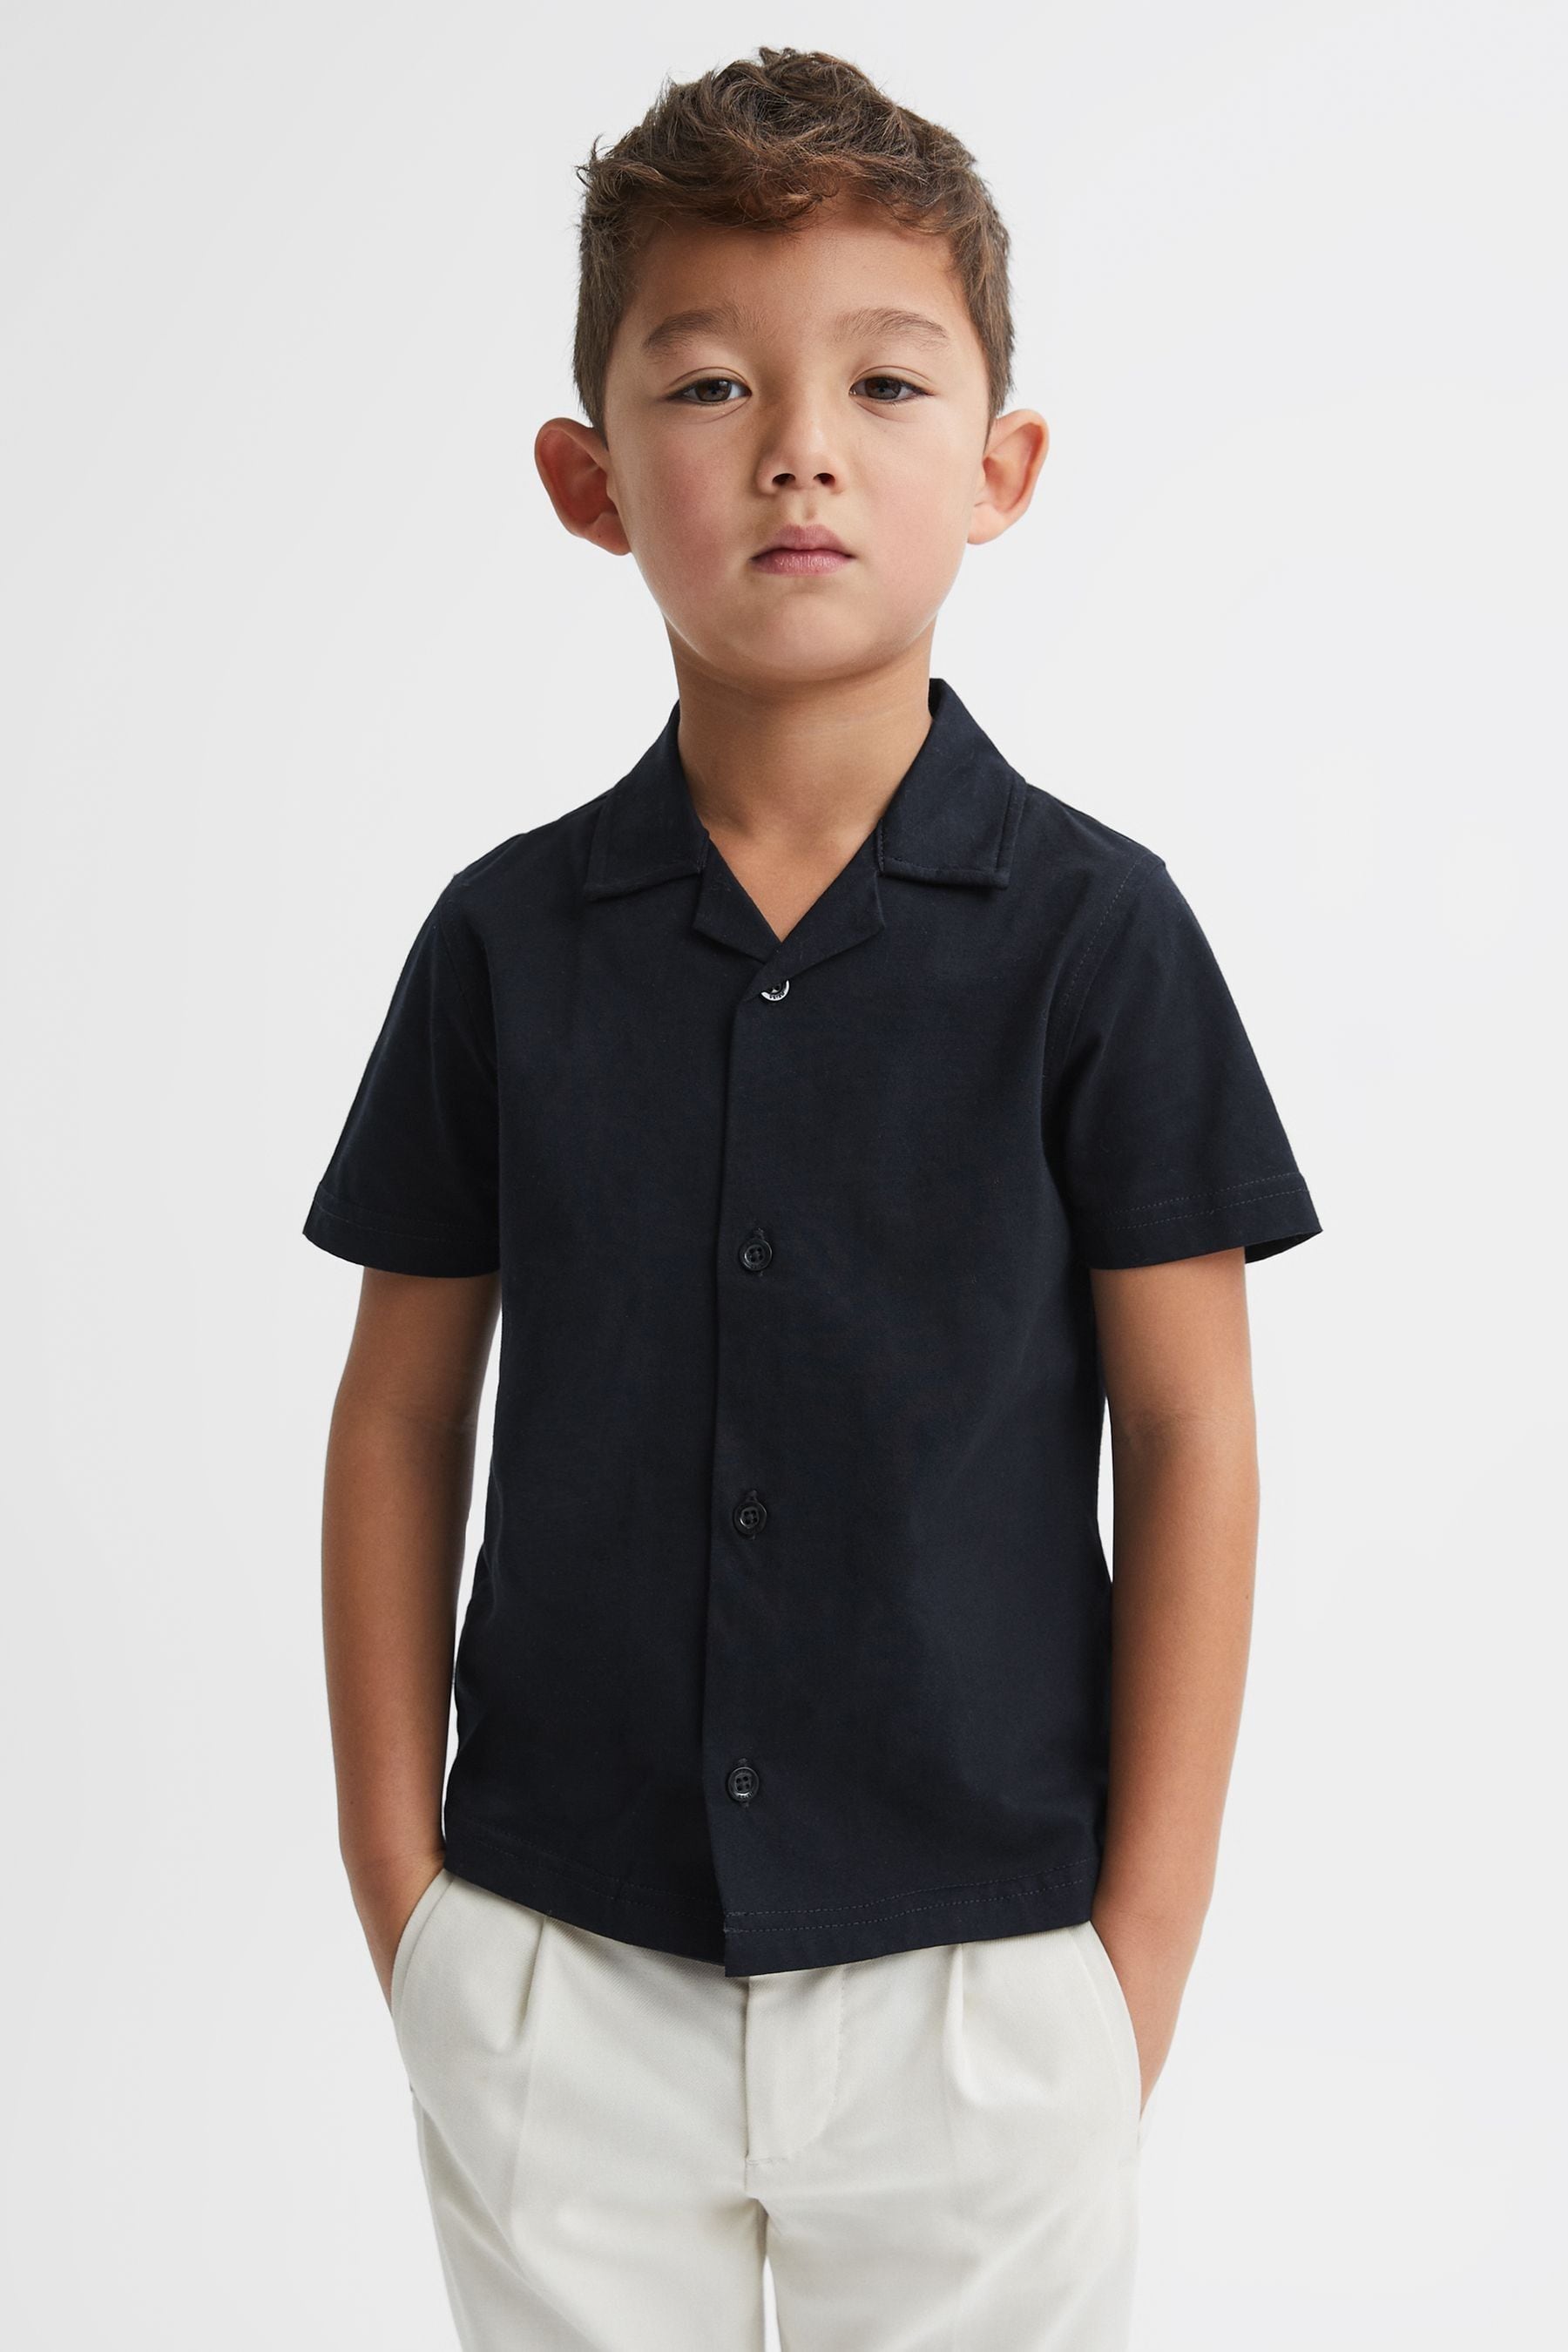 Reiss Kids' Caspa - Navy Cotton Cuban Collar Shirt, Uk 9-10 Yrs